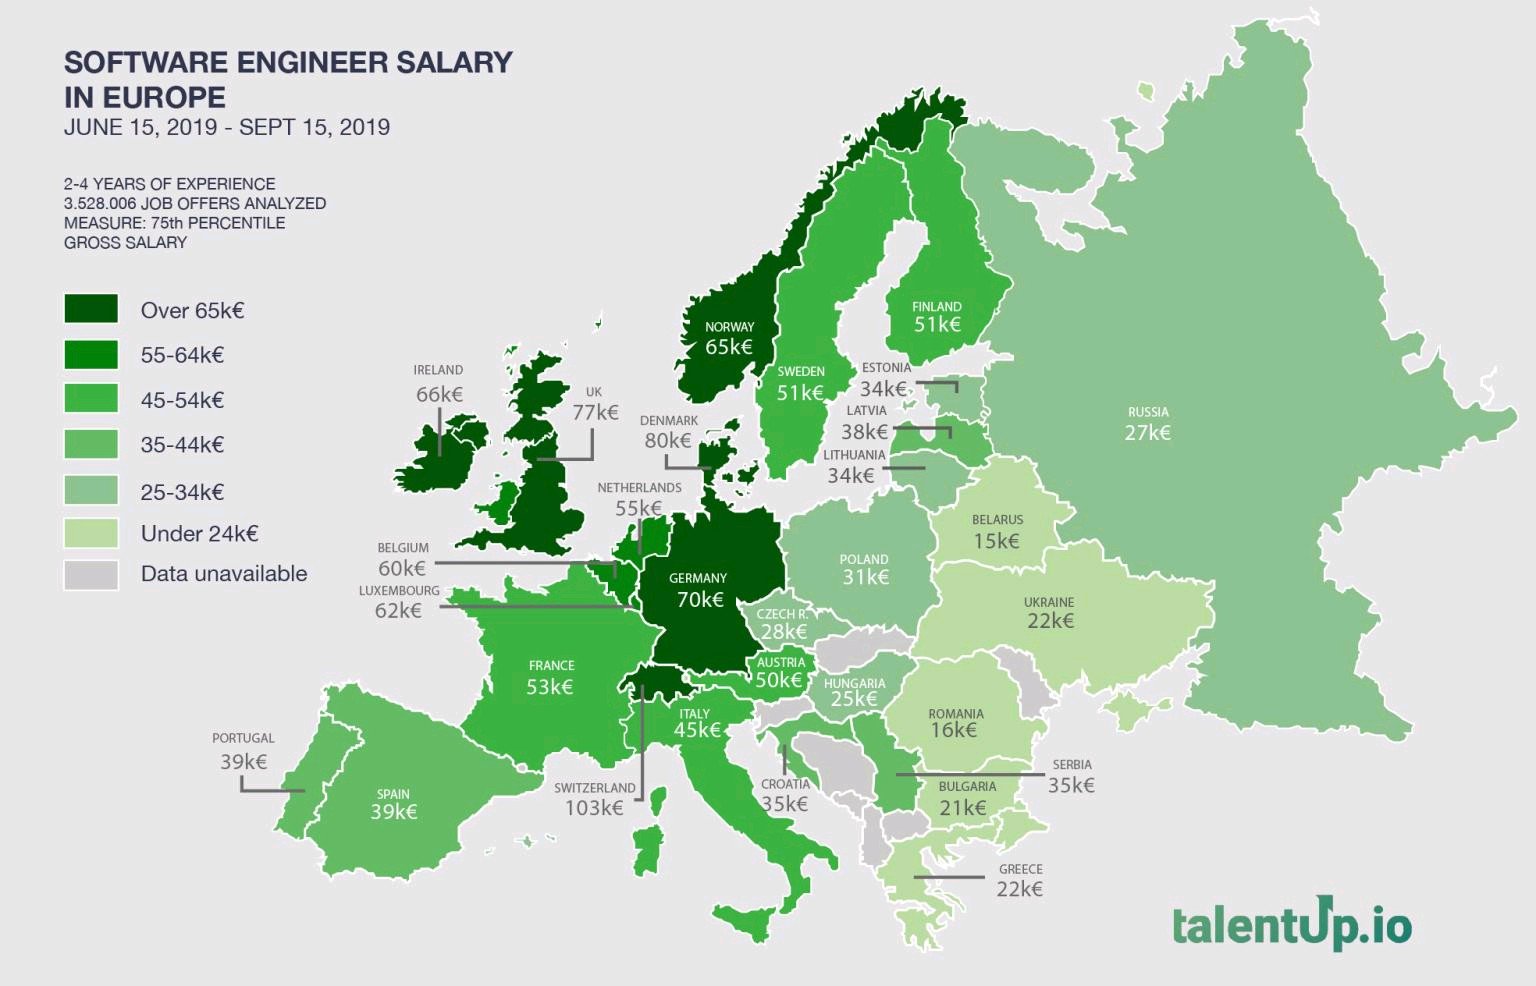 La imagen muestra el mapa de Europa con los salarios medios de desarrolladores de software por países